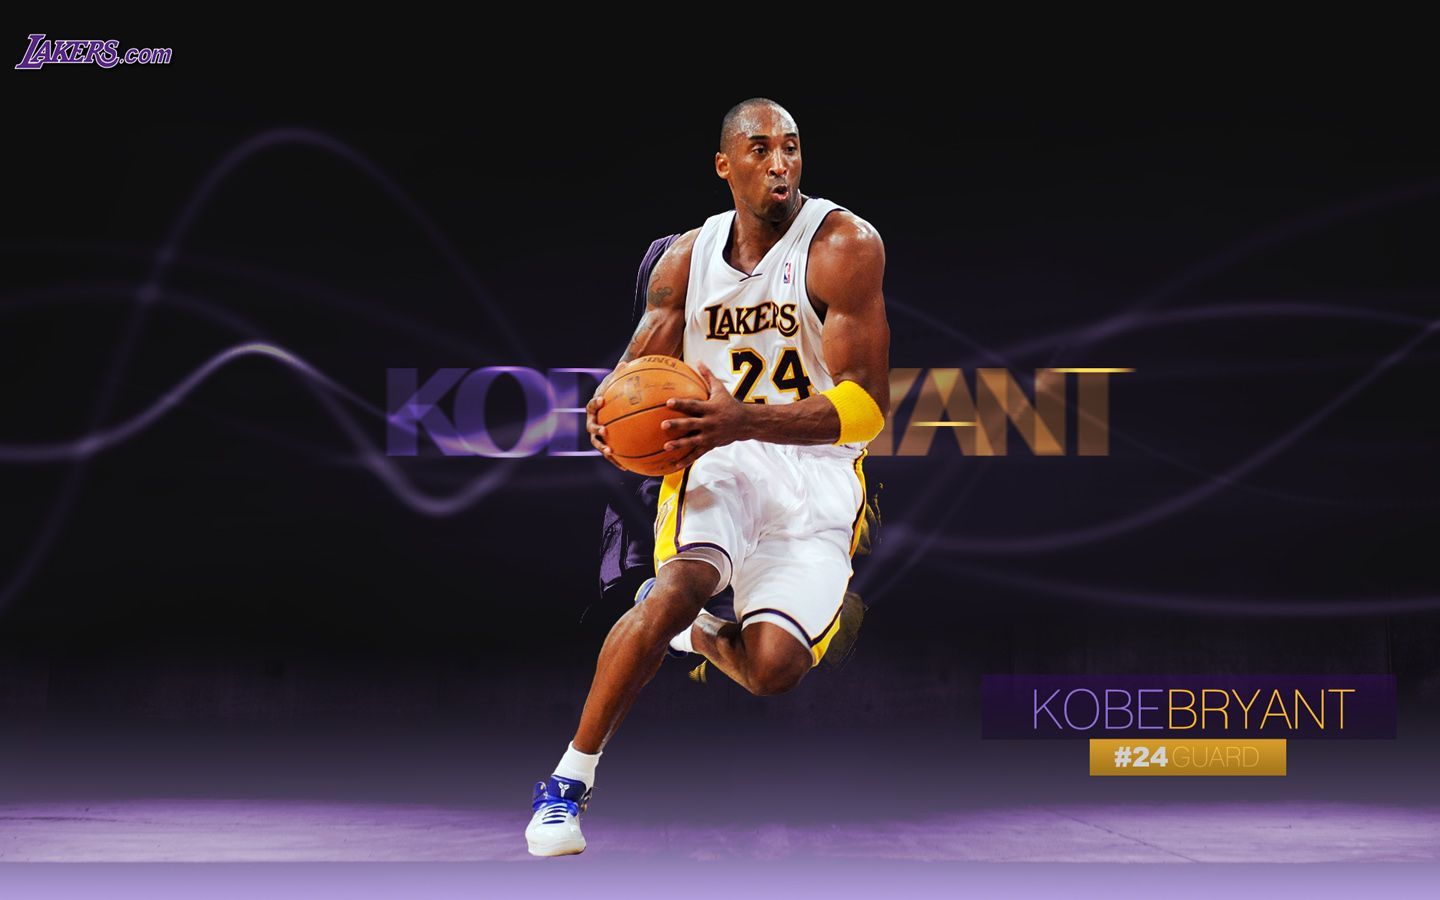 Kobe Bryant 8 Desktop Background. Kobe bryant Kobe bryant, Kobe